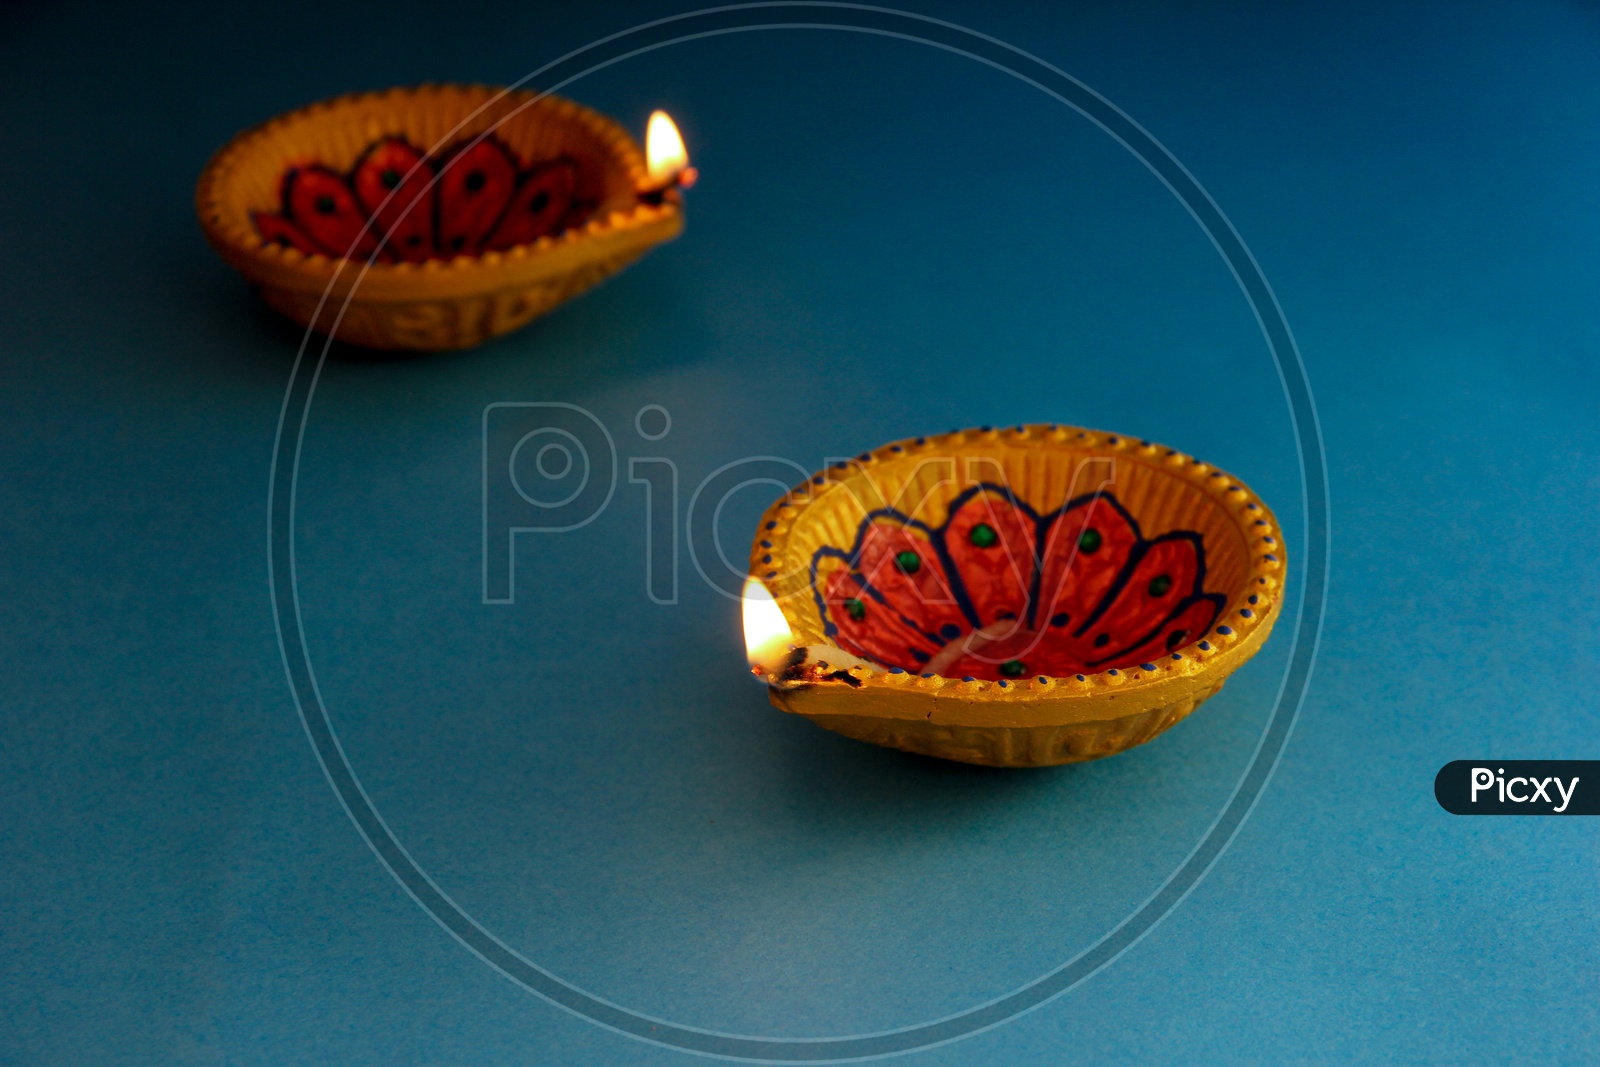 Indian Festival Diwali, Diwali Lamps